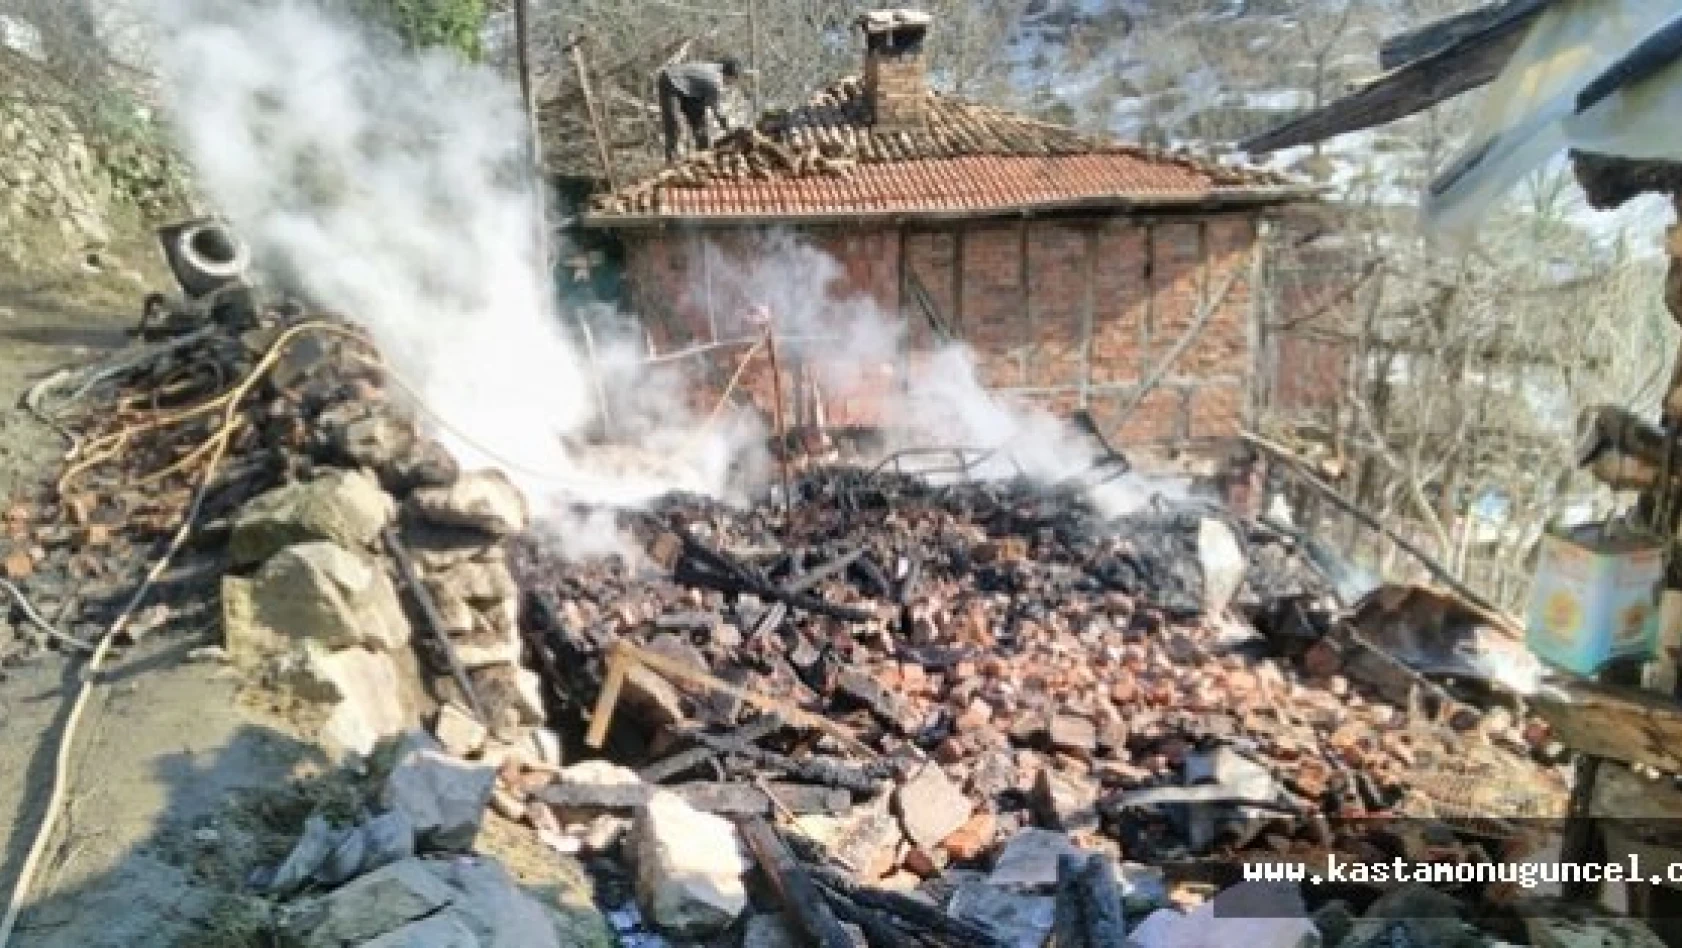 Kastamonu'da Yangın: İki Aile Evsiz Kaldı